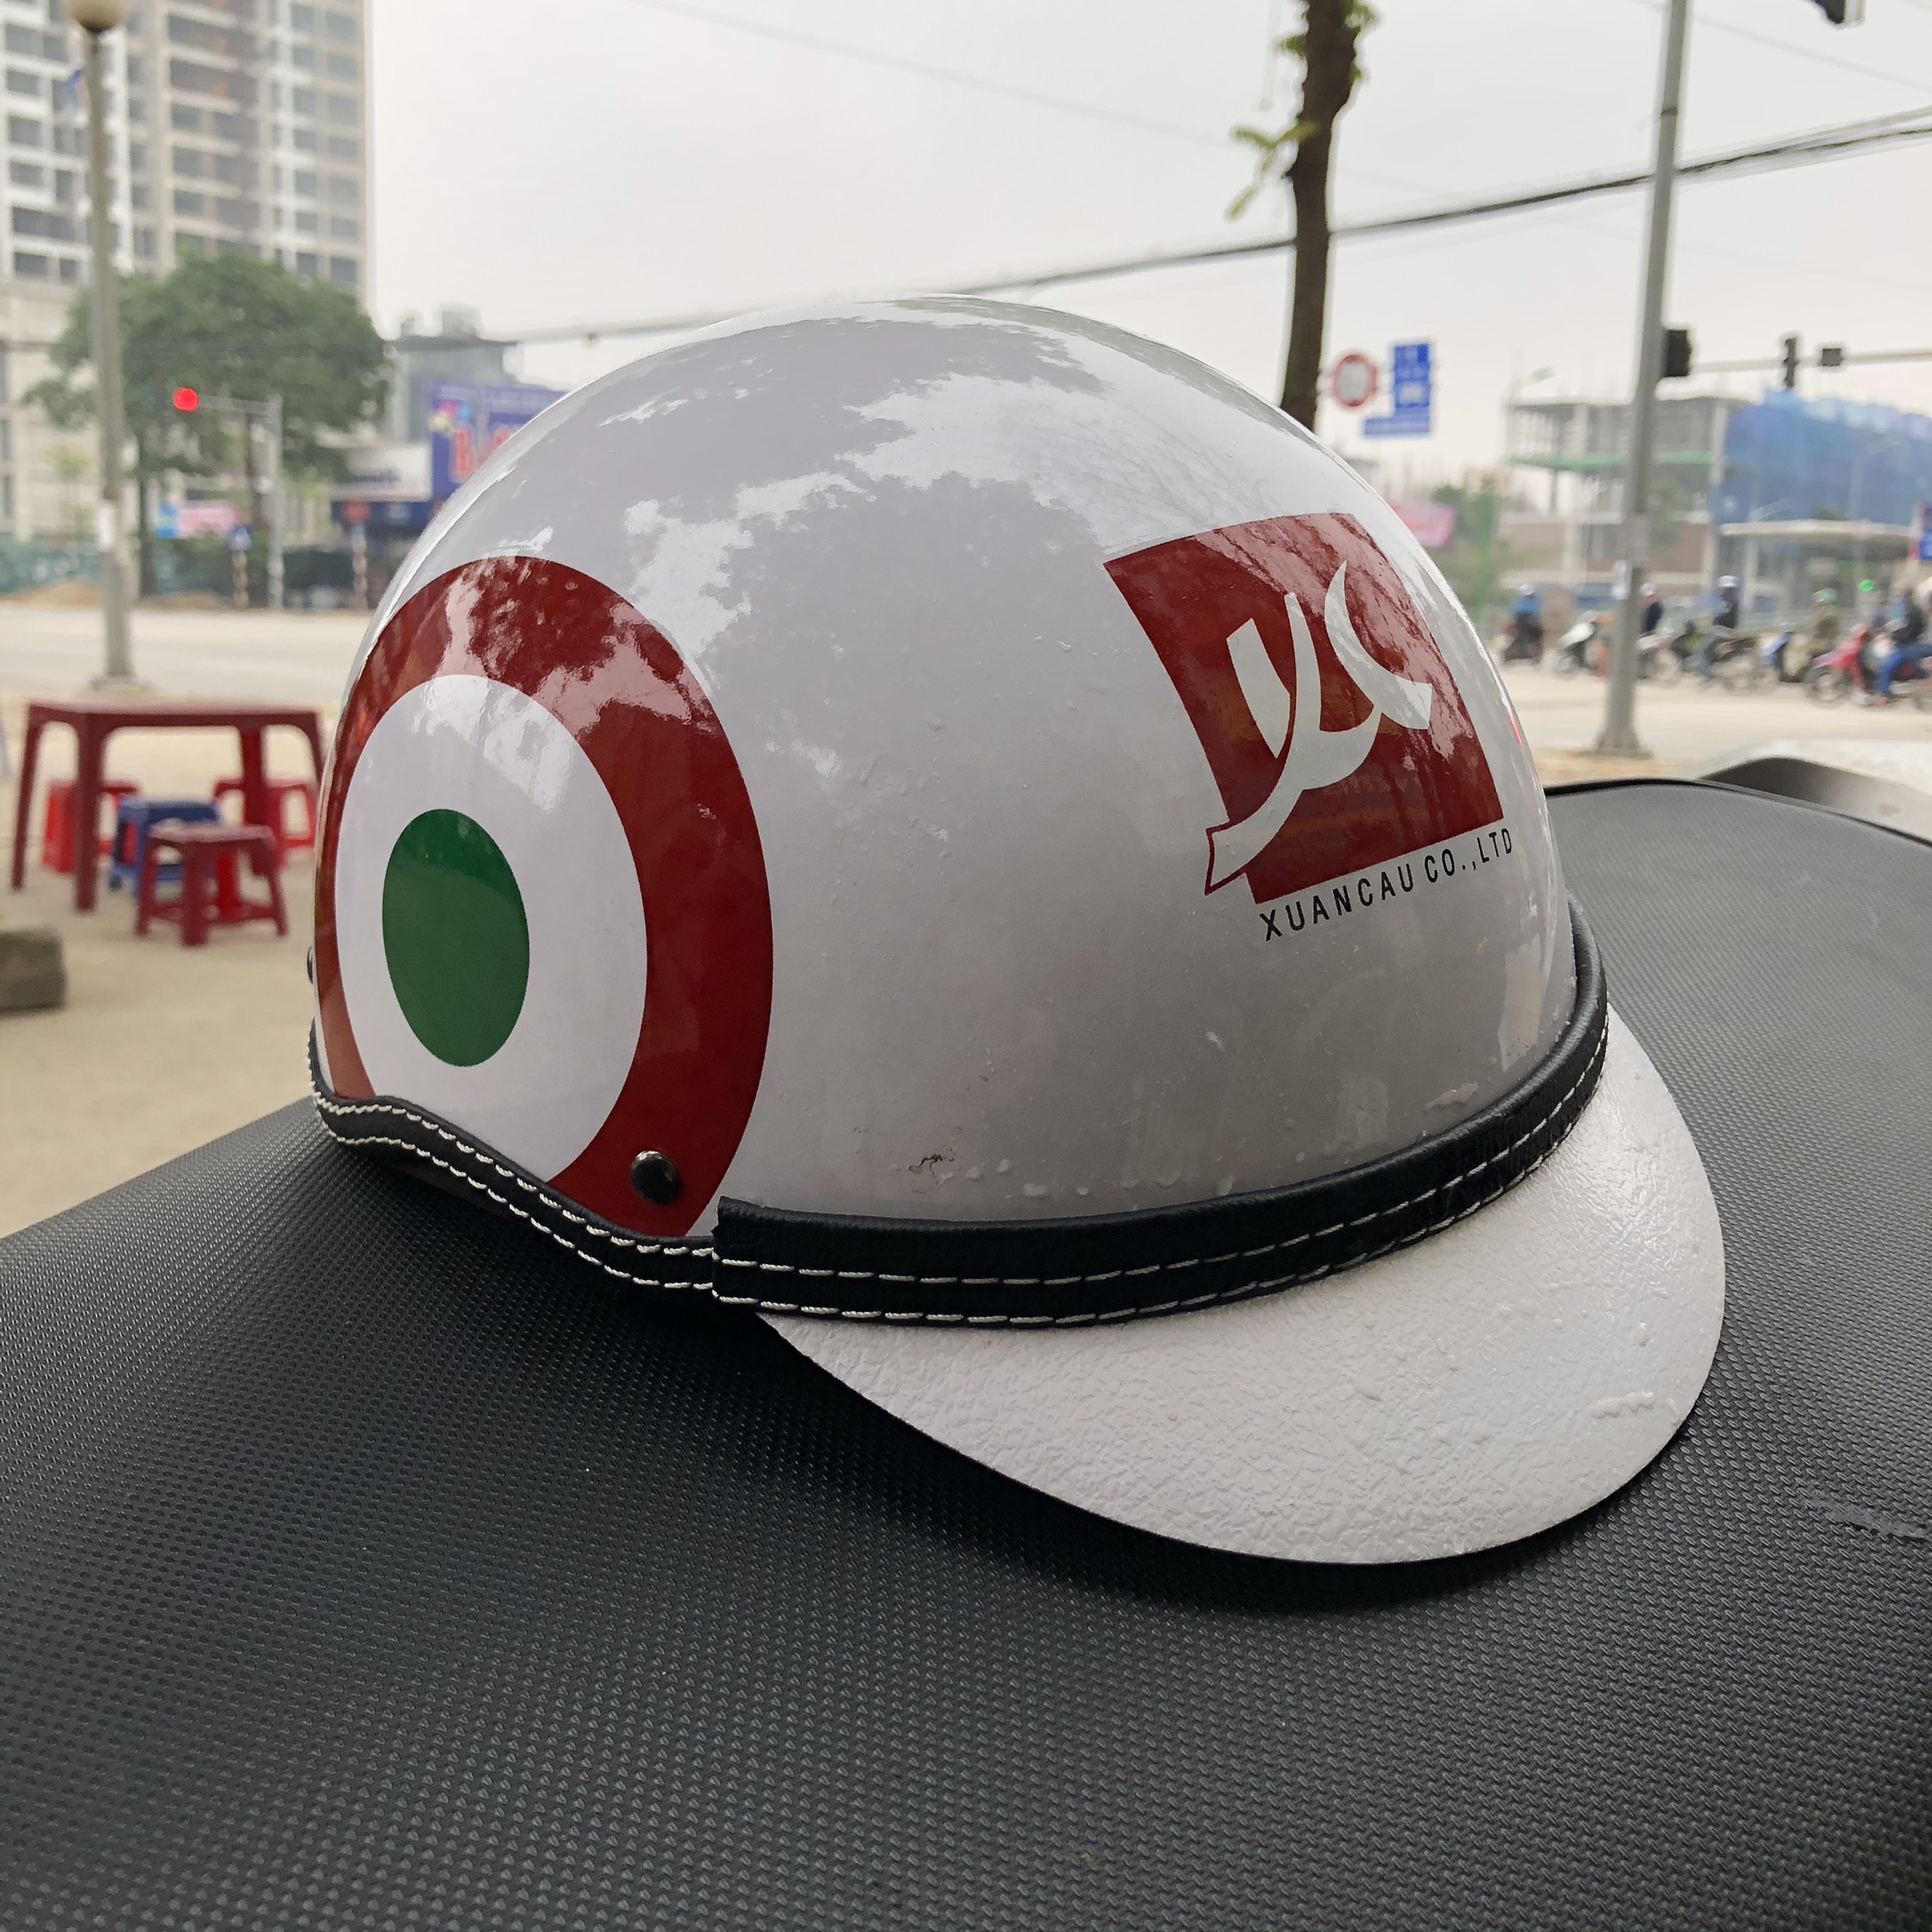 Mũ bảo hiểm in logo quảng cáo chất lượng ở Hà Nội